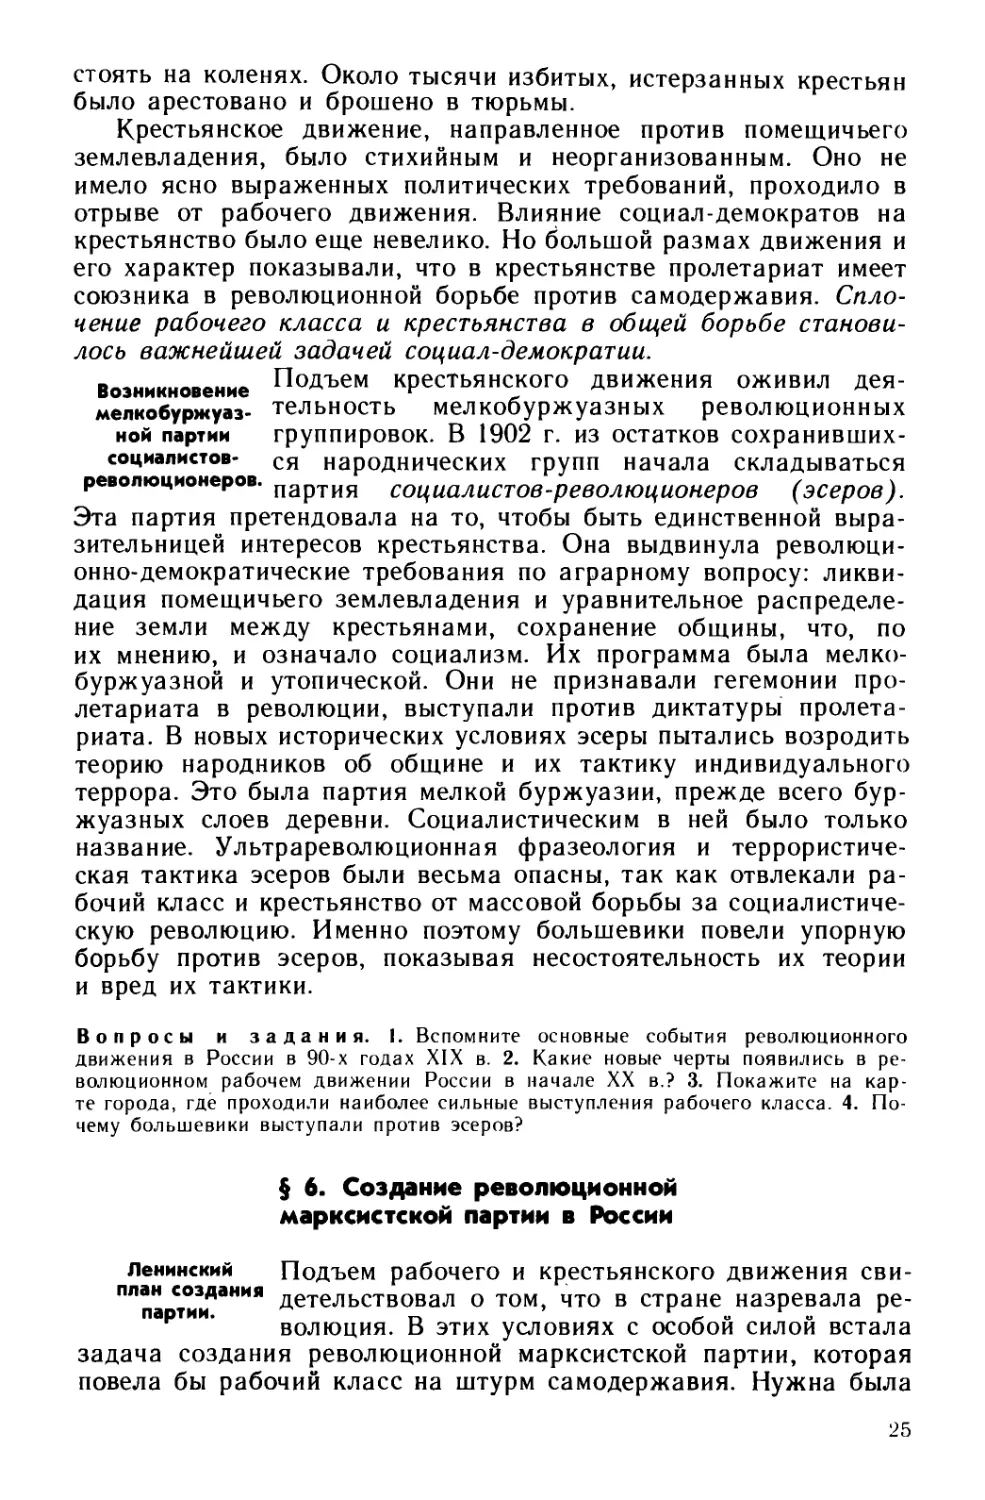 § 6. Создание революционной марксистской партии в России